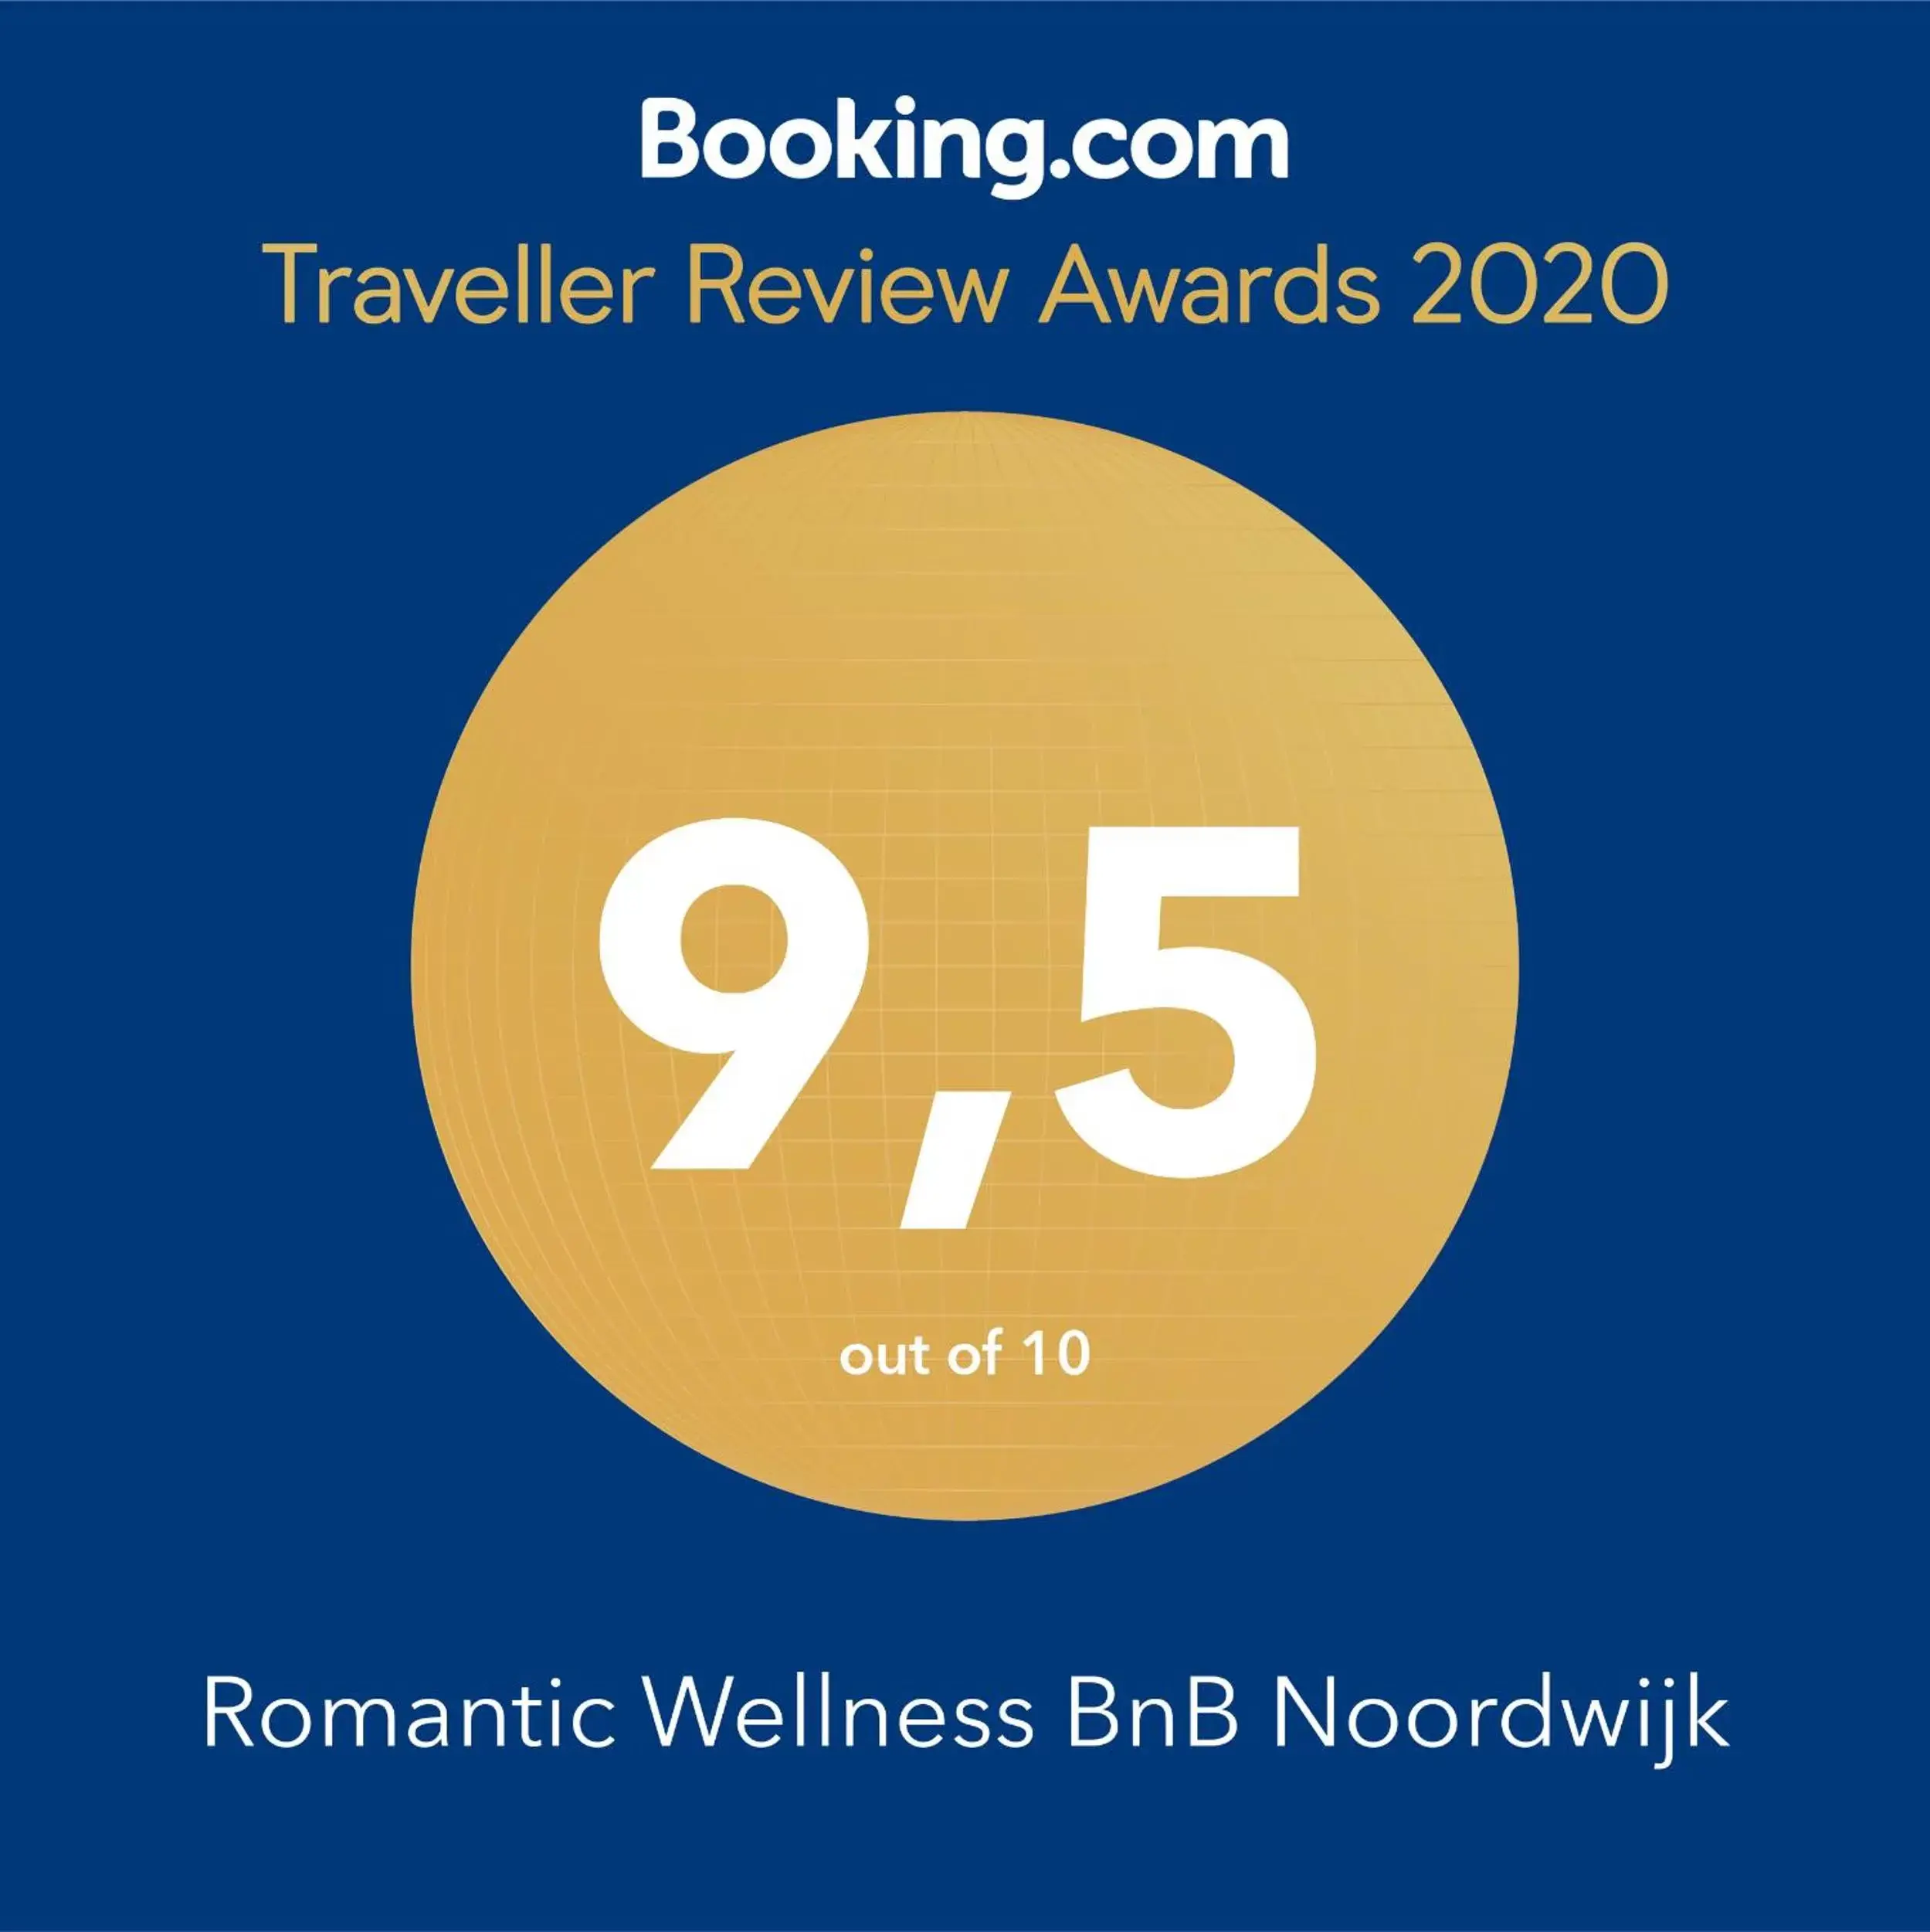 Romantic Wellness BnB Noordwijk